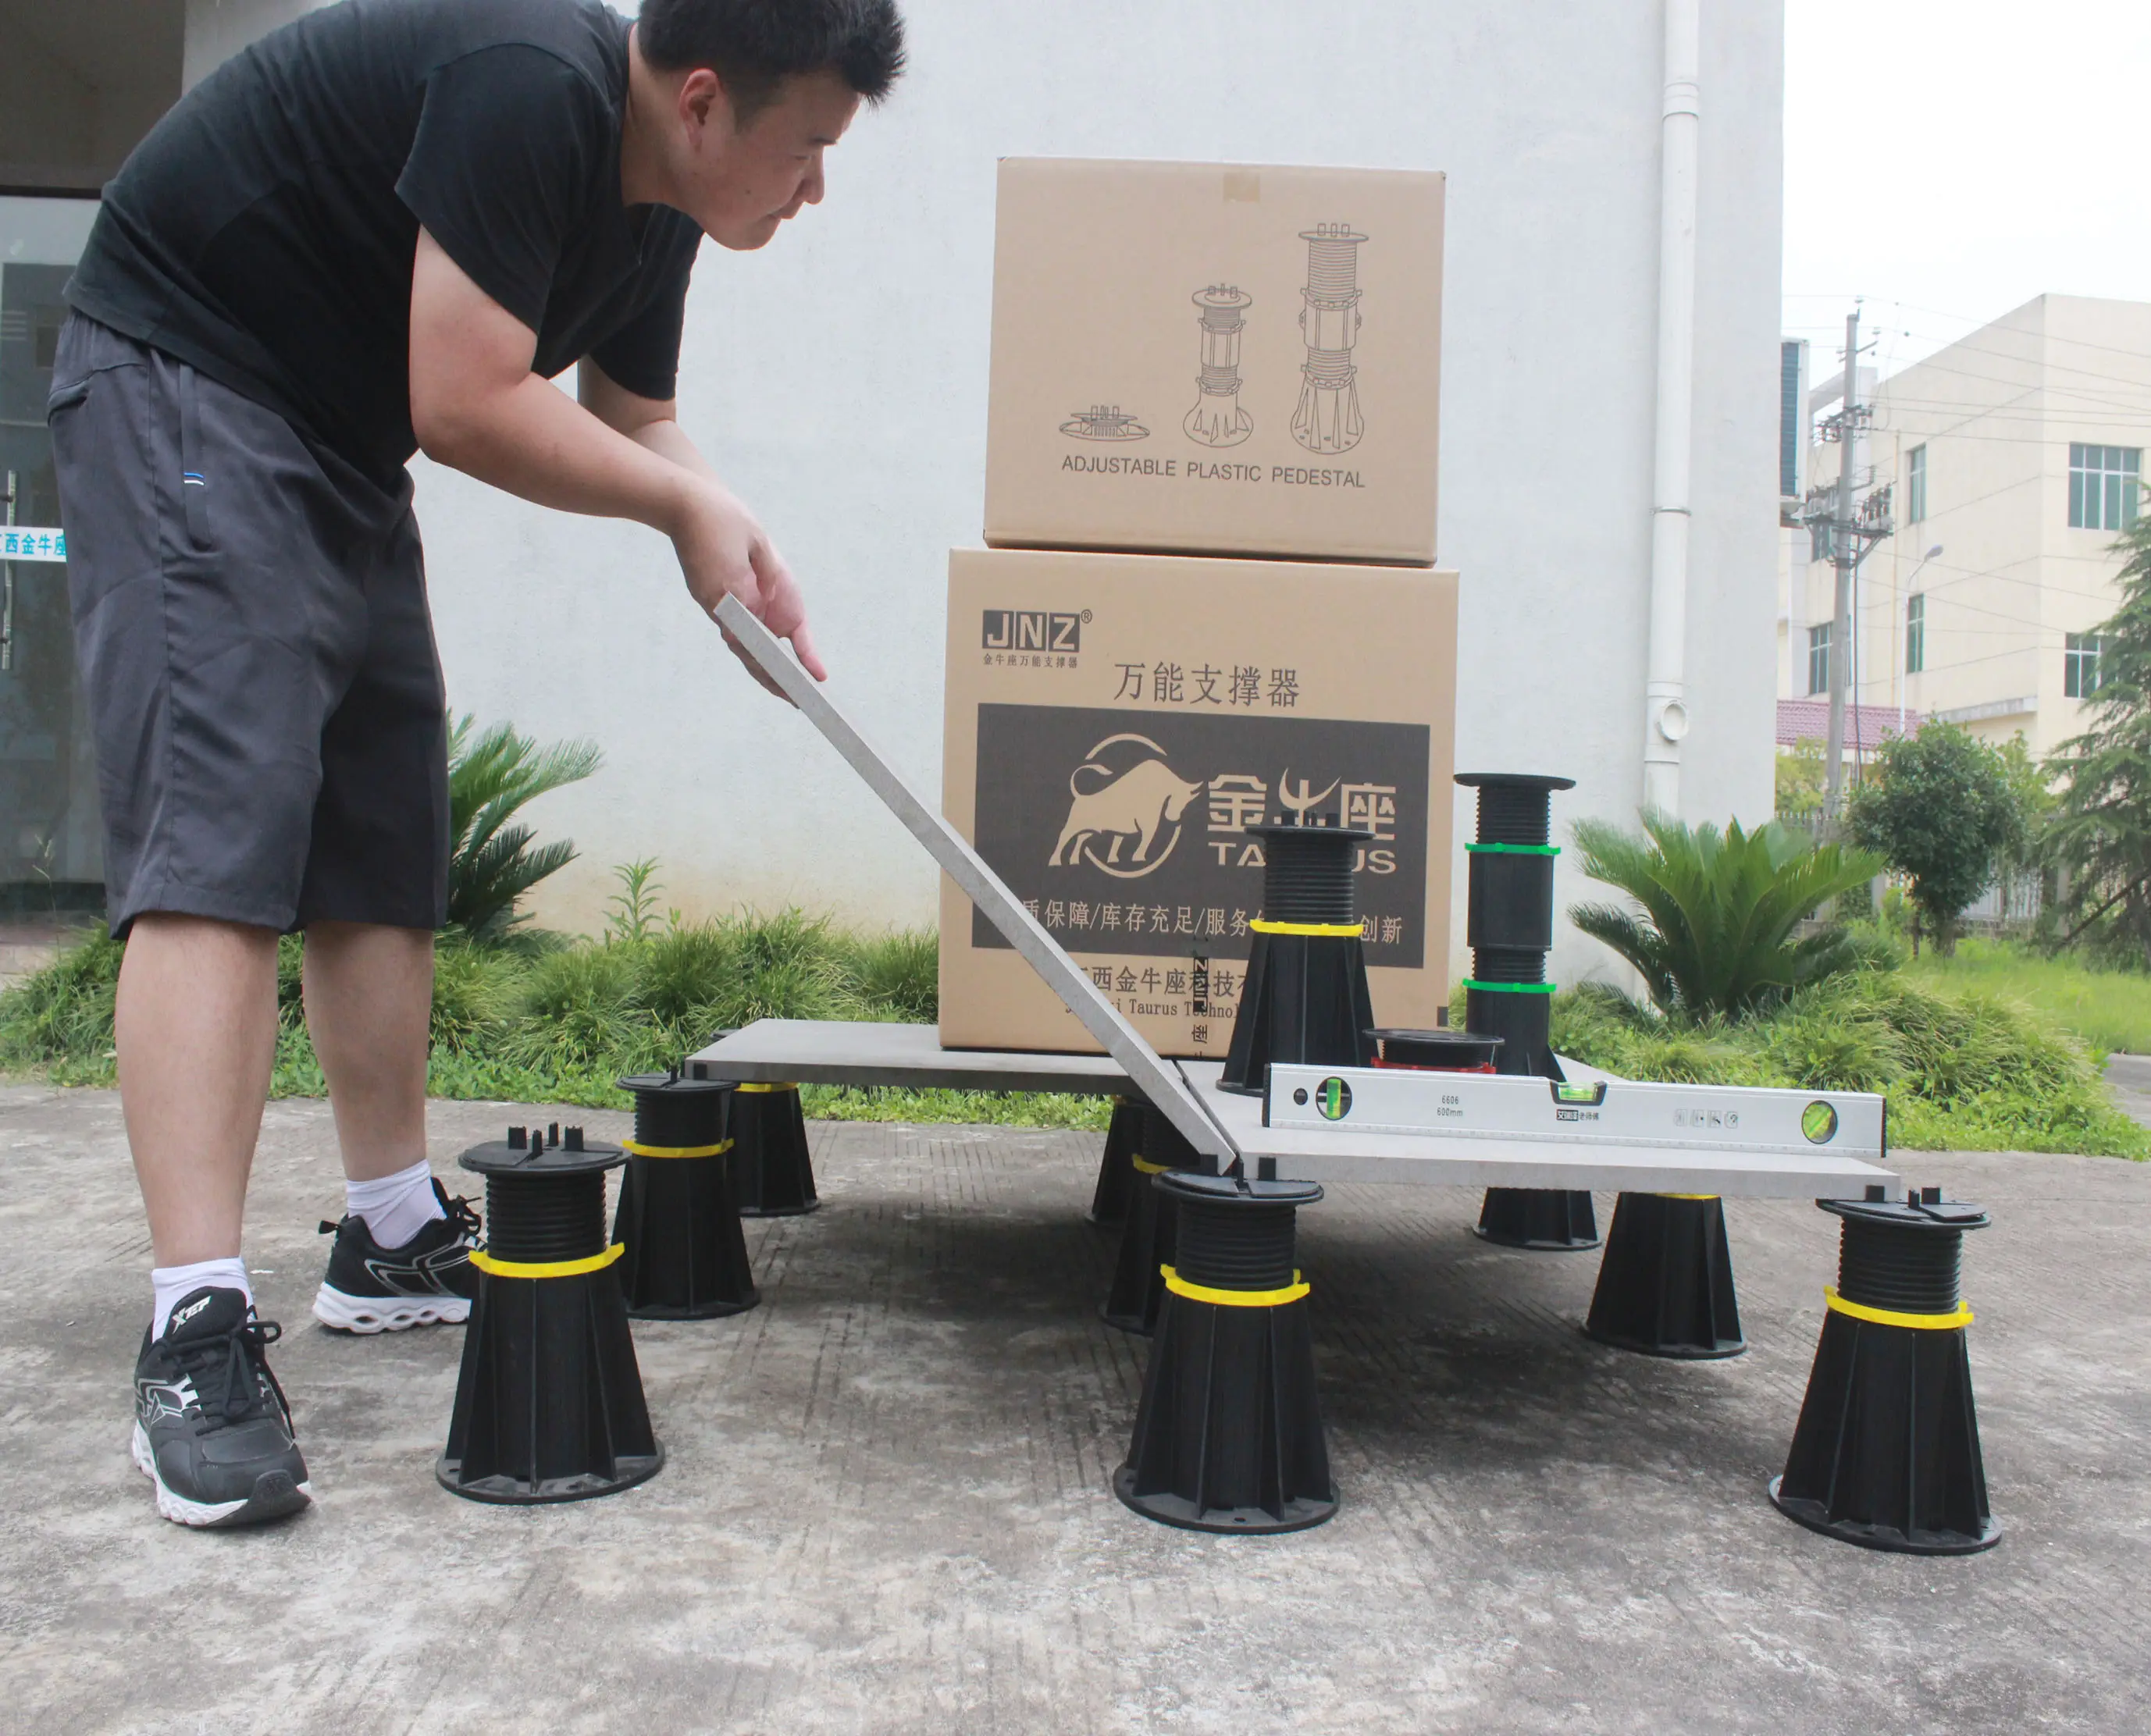 JNZ-pedestal de plástico ajustable para cubierta y pavimento, precio bajo